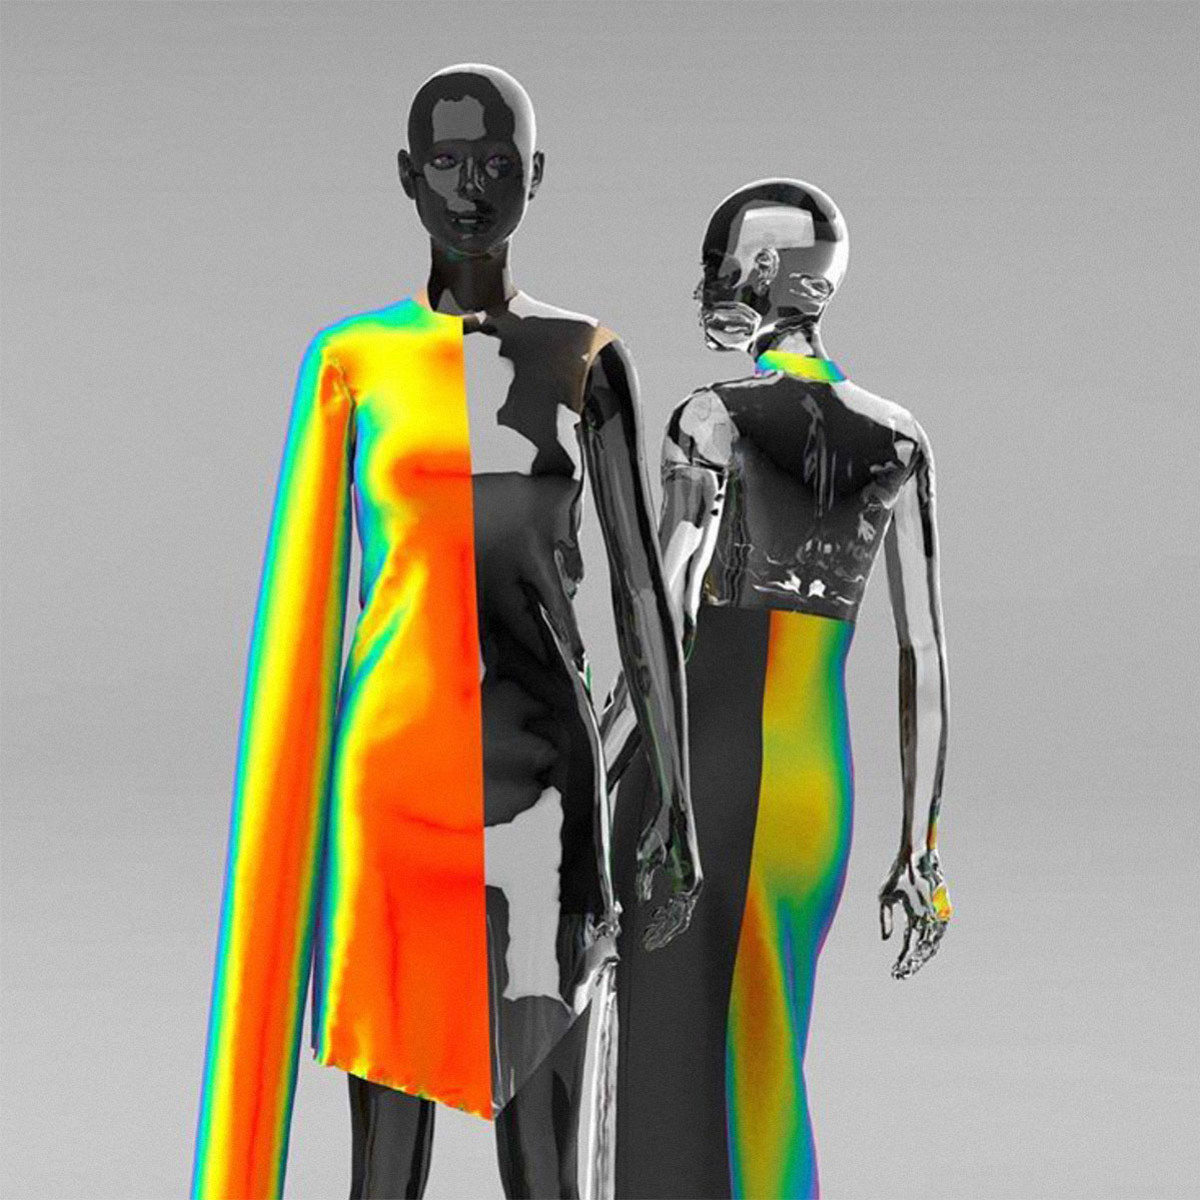 Мода 63. Одежда будущего. Цифровая одежда будущего. Костюм будущего. Технологичная одежда будущего.